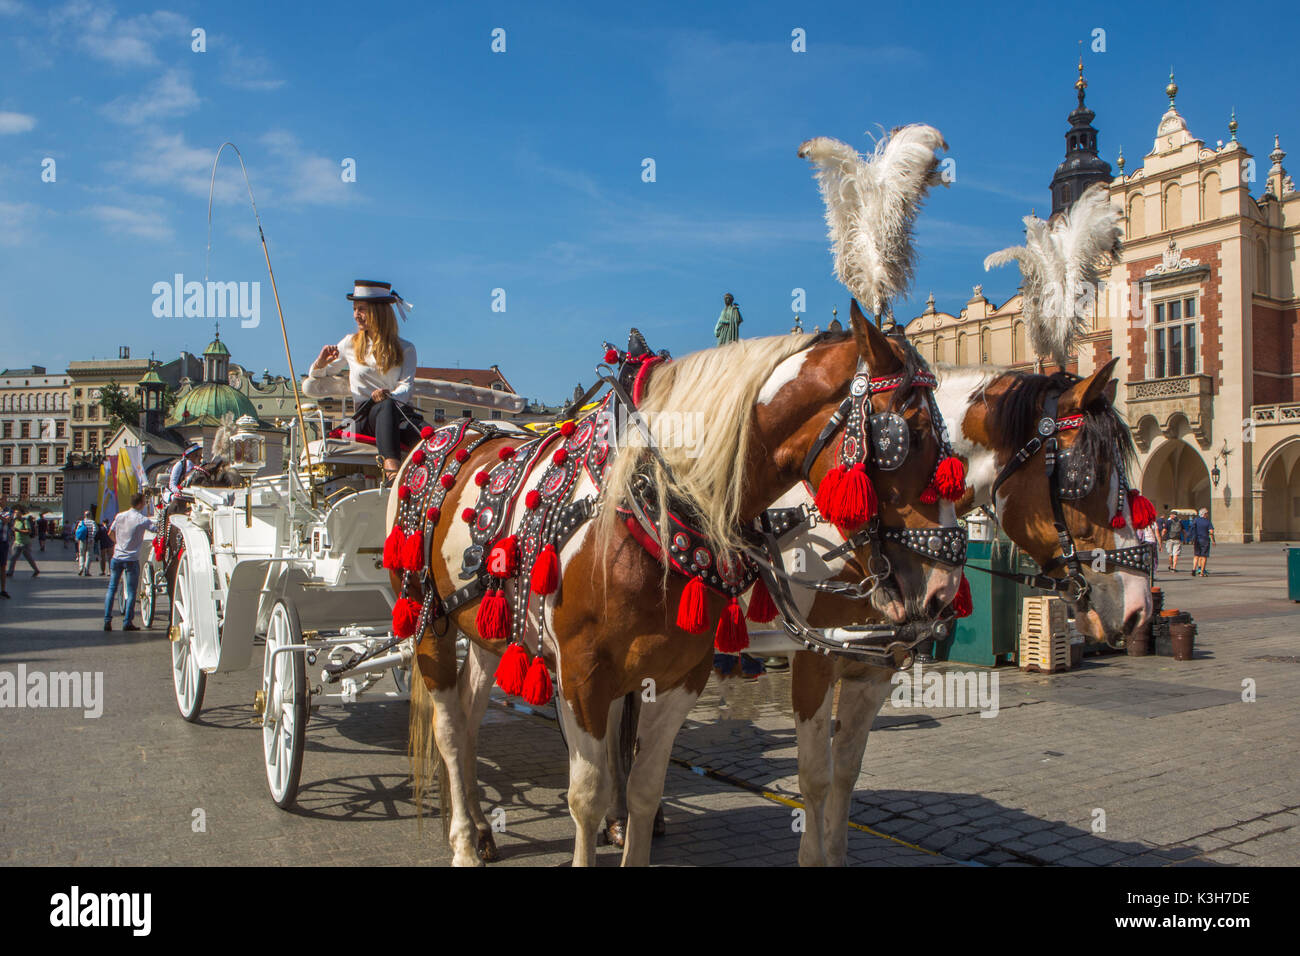 Polonia, Cracovia, la plaza del mercado, la ciudad de Caballos Foto de stock